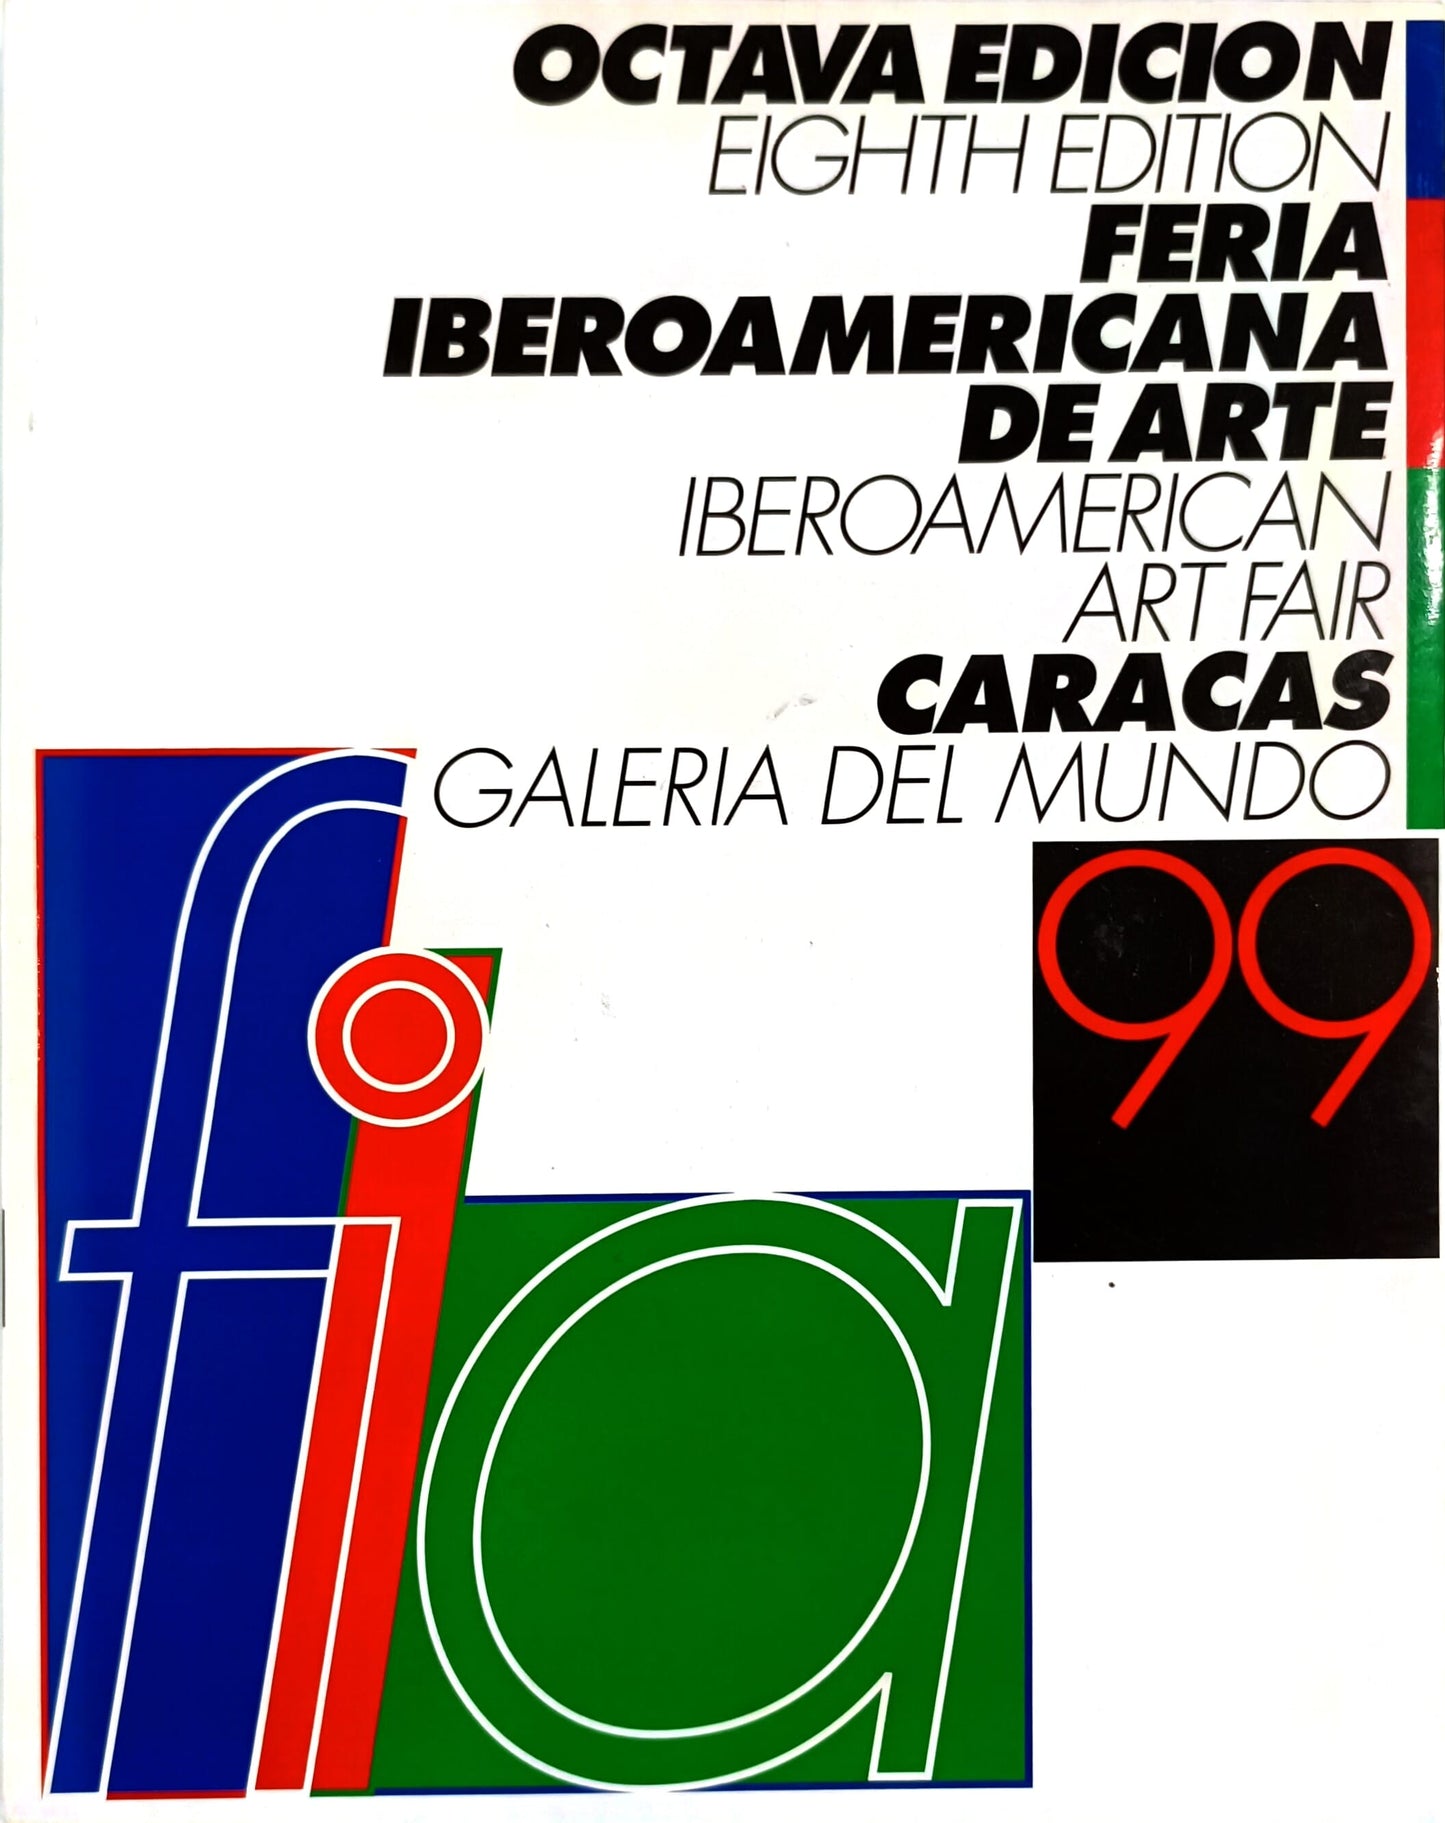 99 FIA. Octava edición. Feria iberoamericana de arte. Caracas. Galería del Mundo